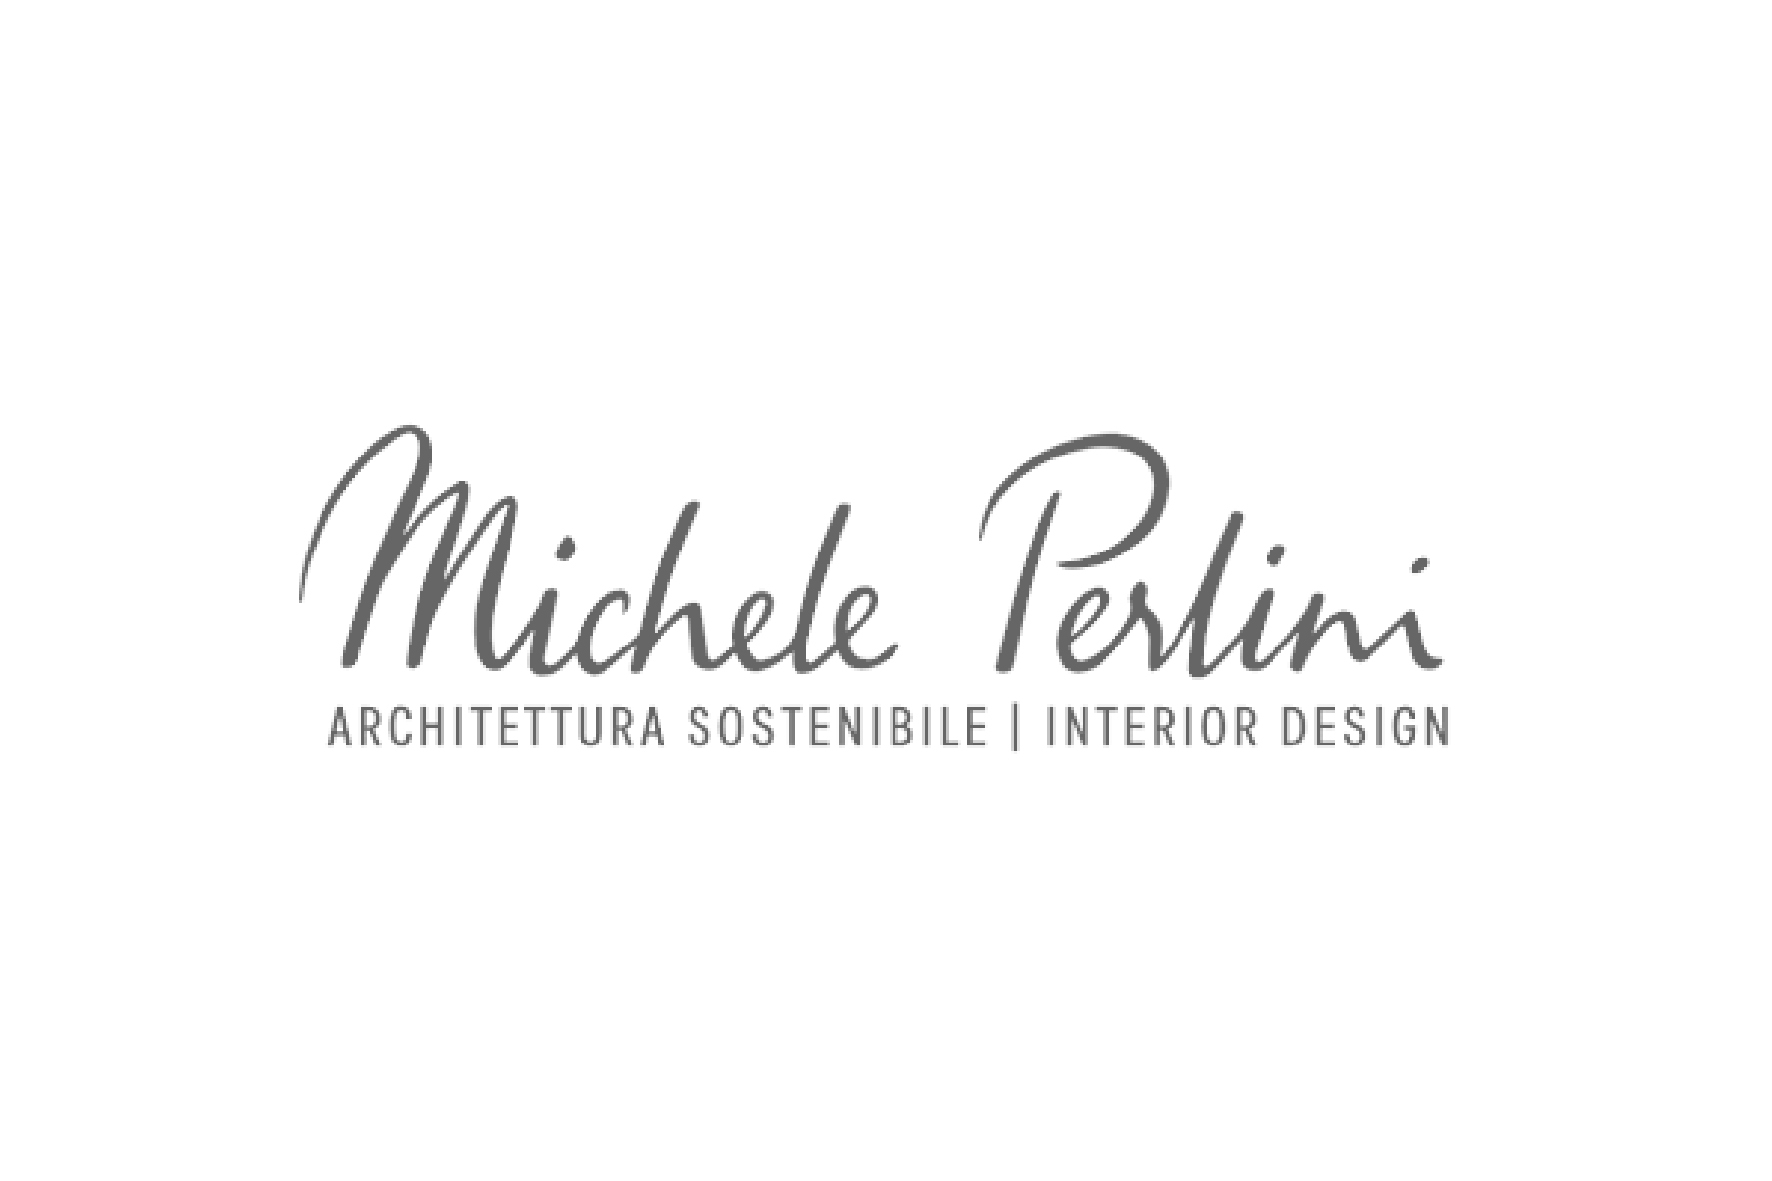 MICHELE PERLINI ARCHITECTURE